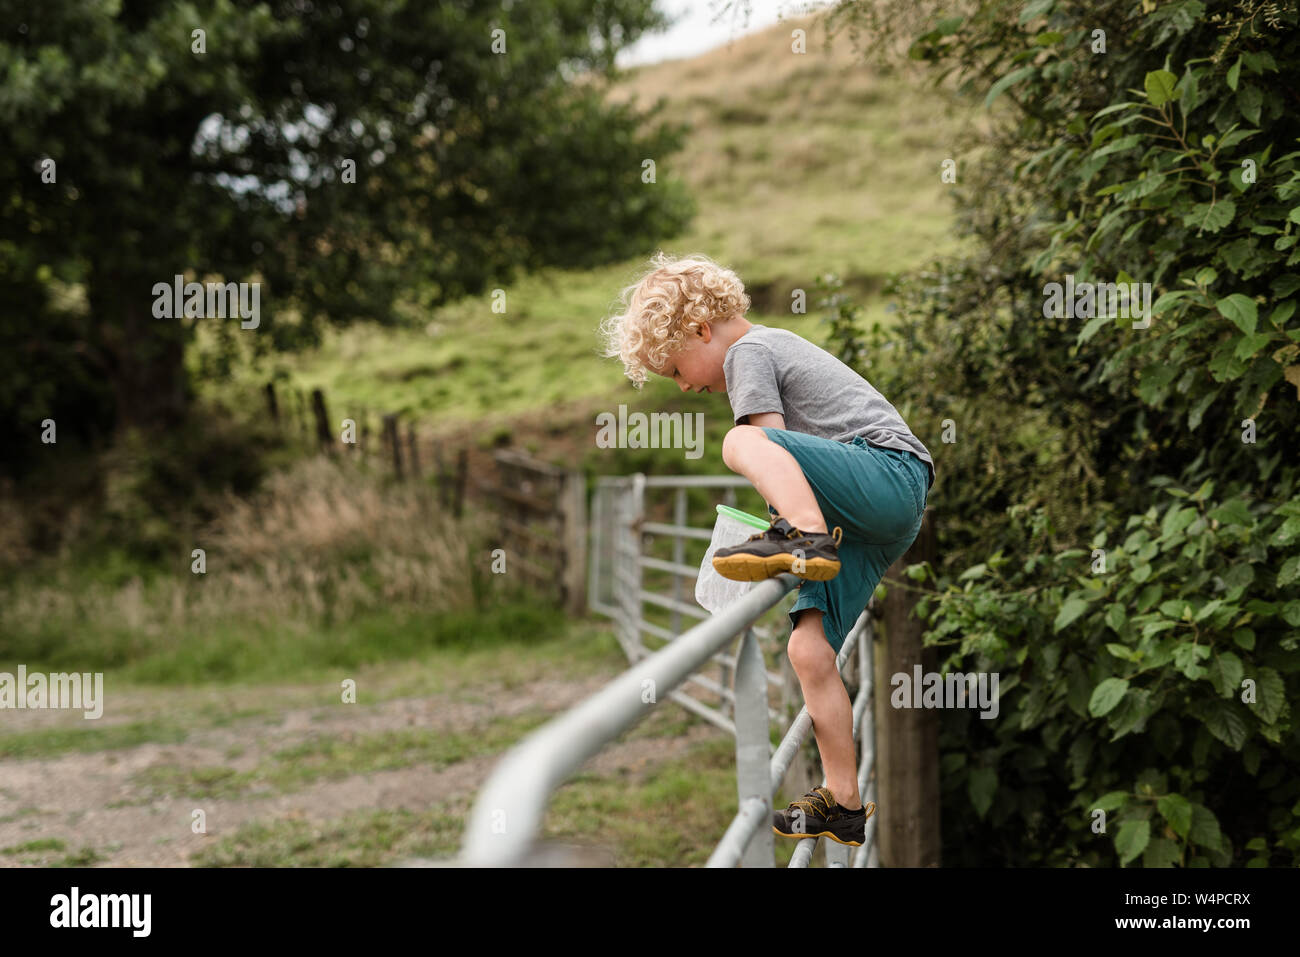 Attivo in modo indipendente il bambino che si arrampica sul recinto Foto Stock